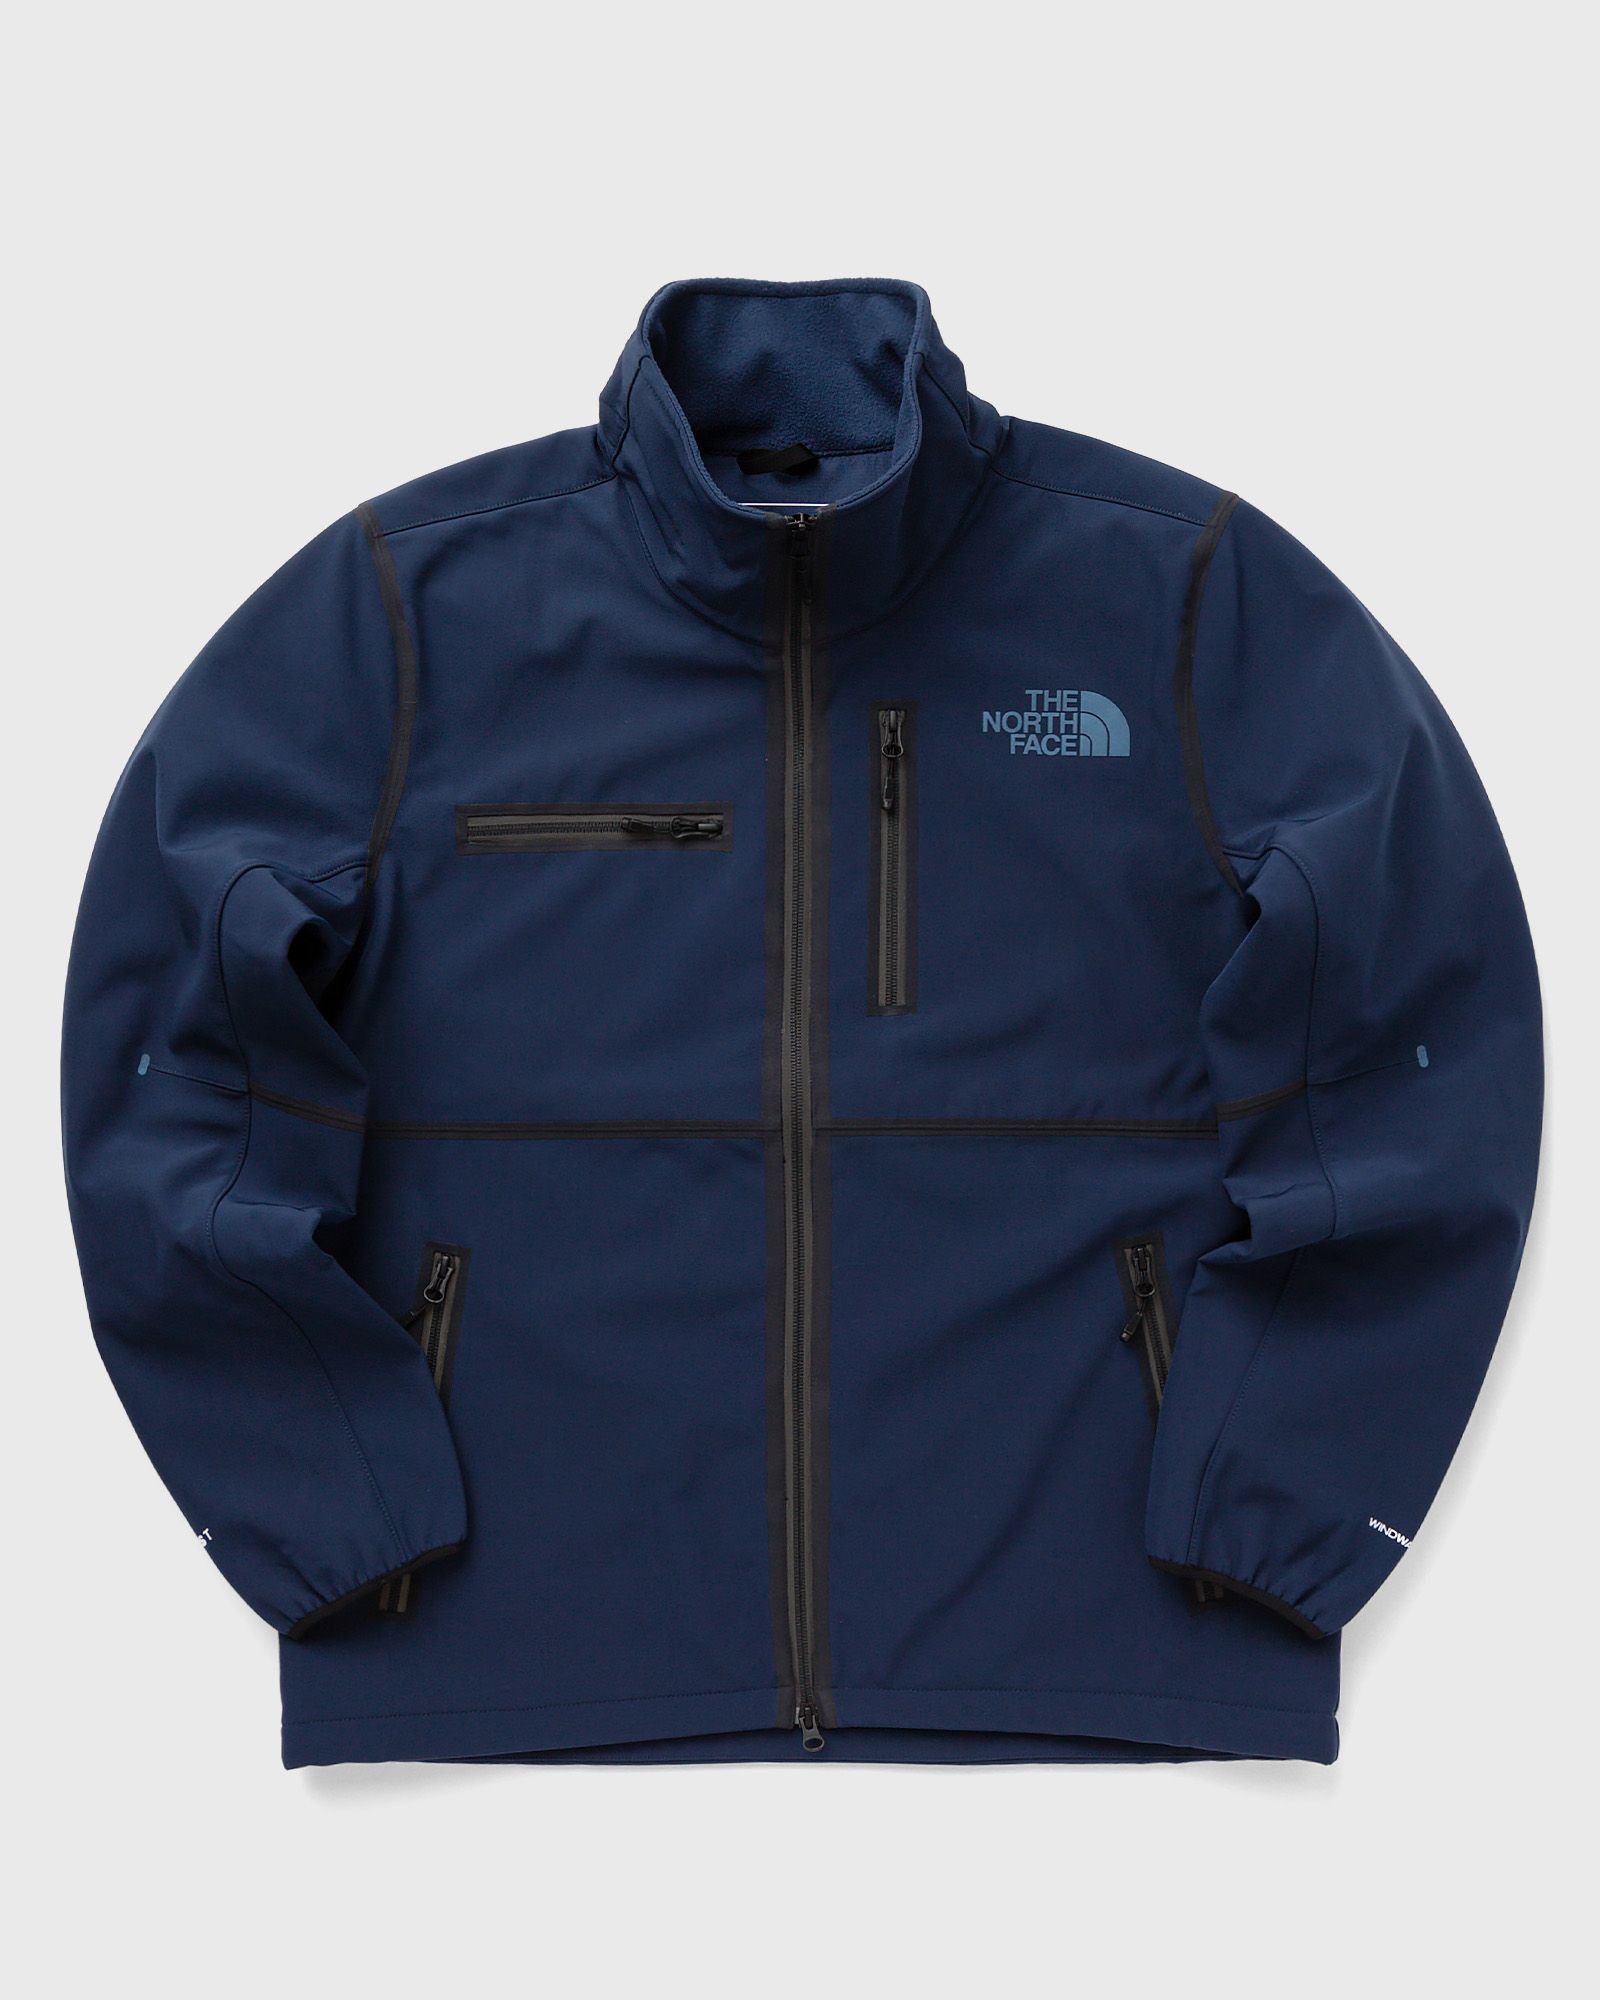 The North Face - rmst denali jacket men windbreaker blue in größe:xl